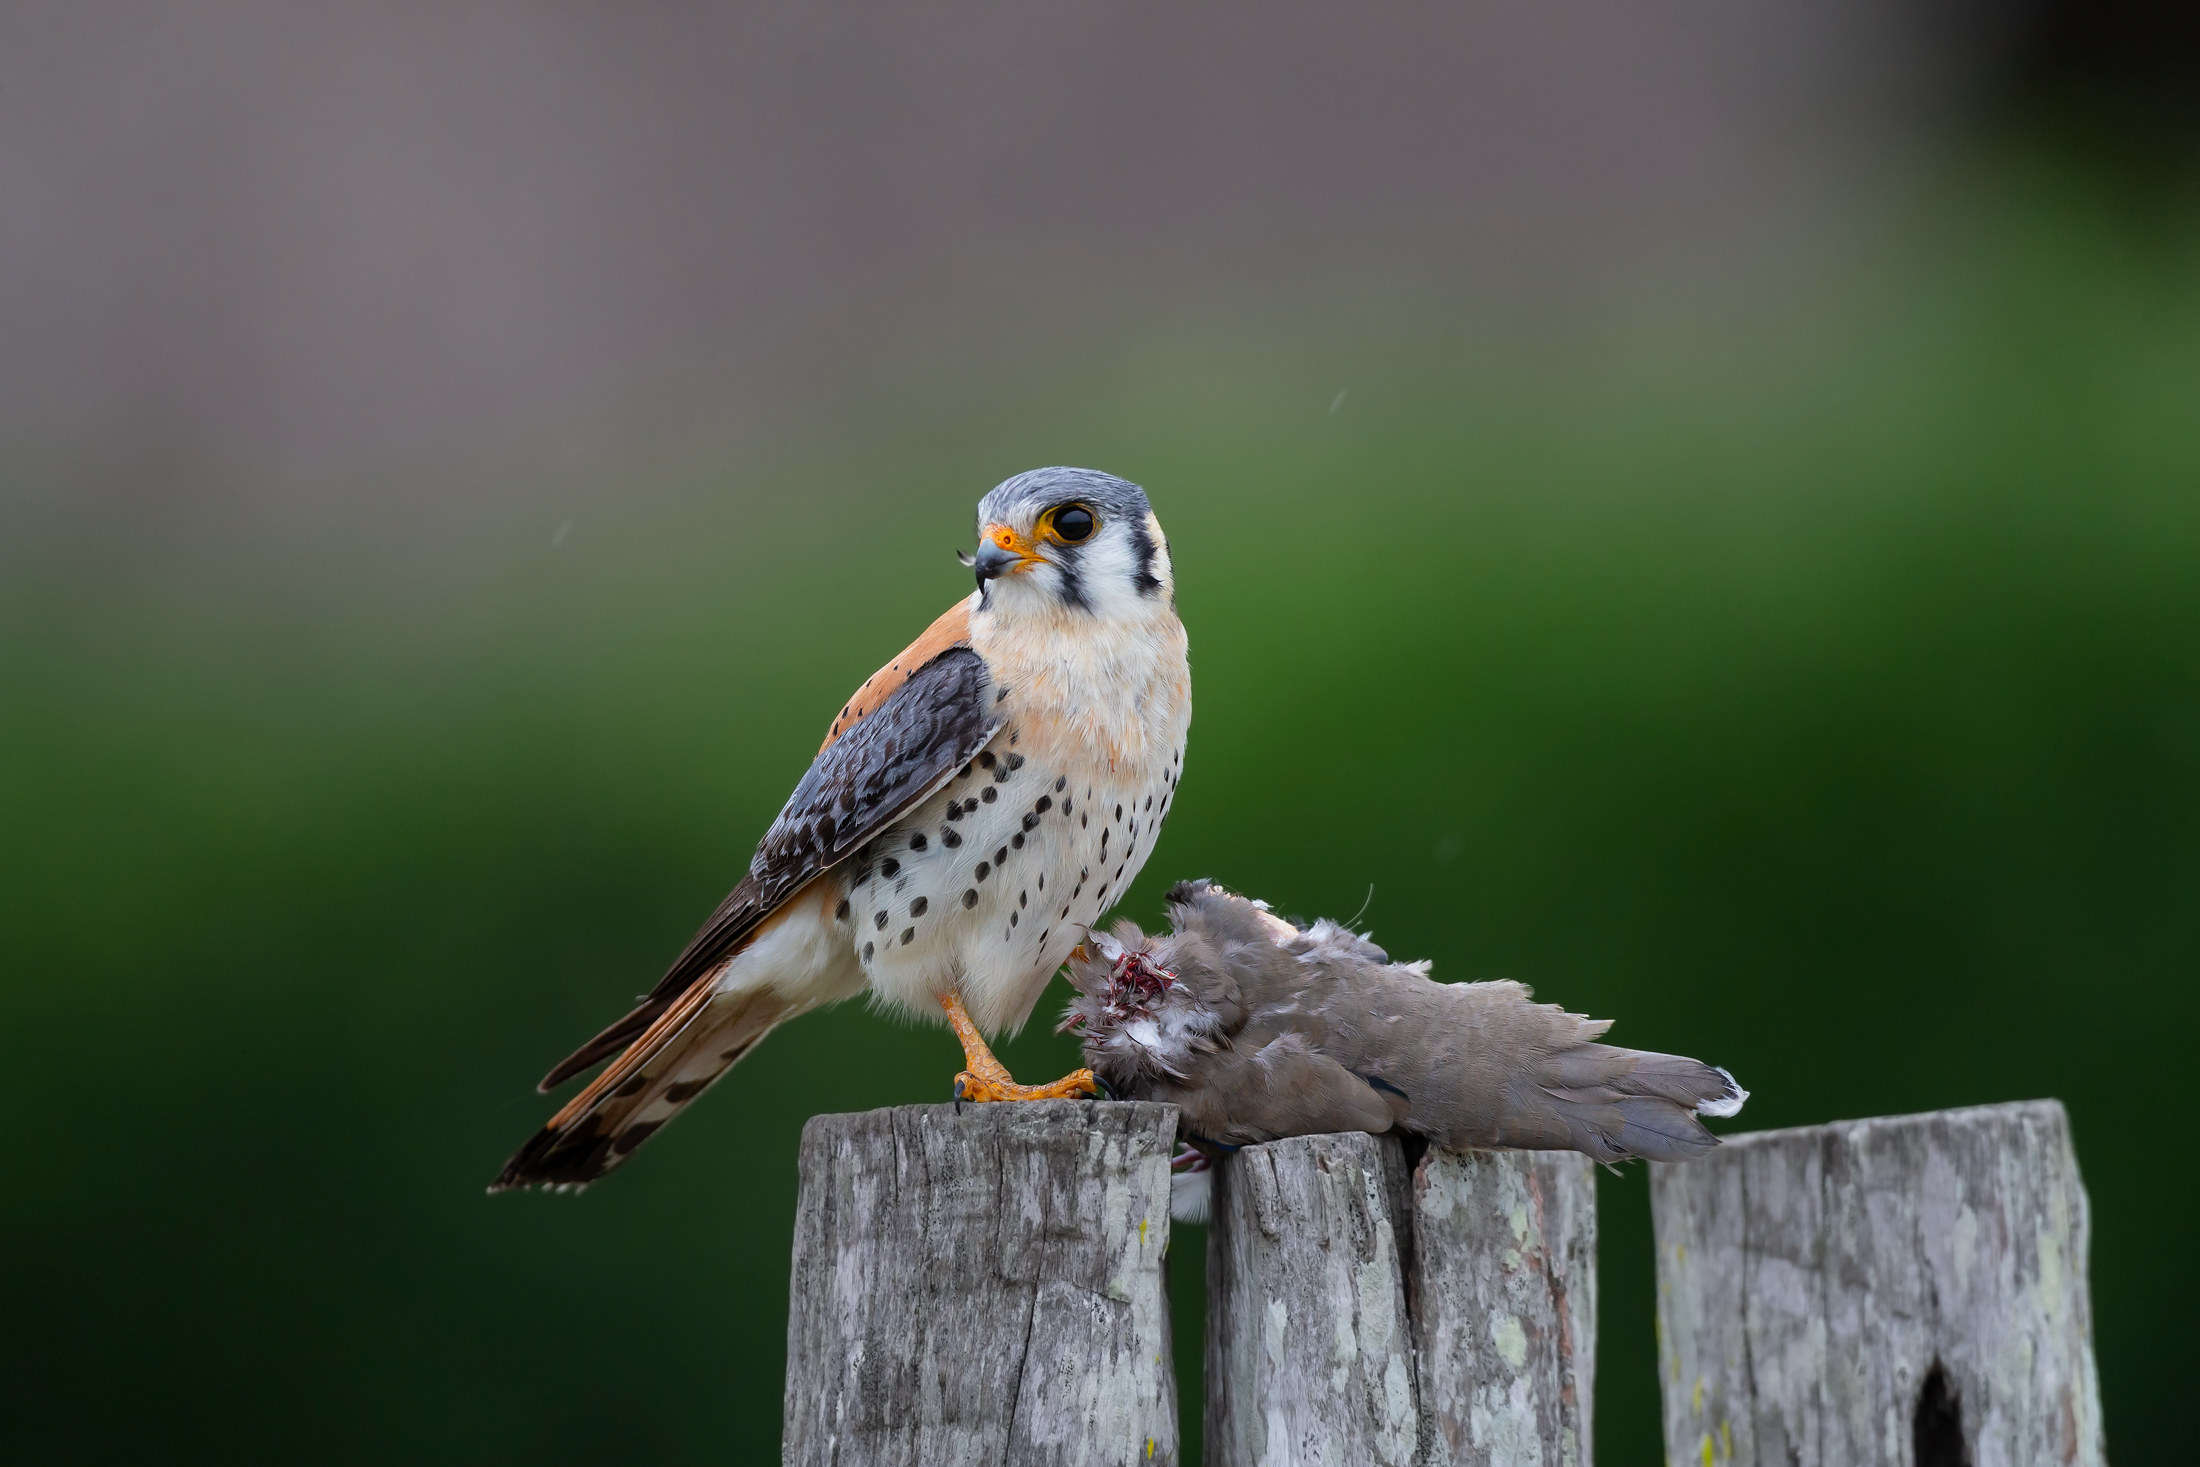 Sparrowhawk falcon and prey...